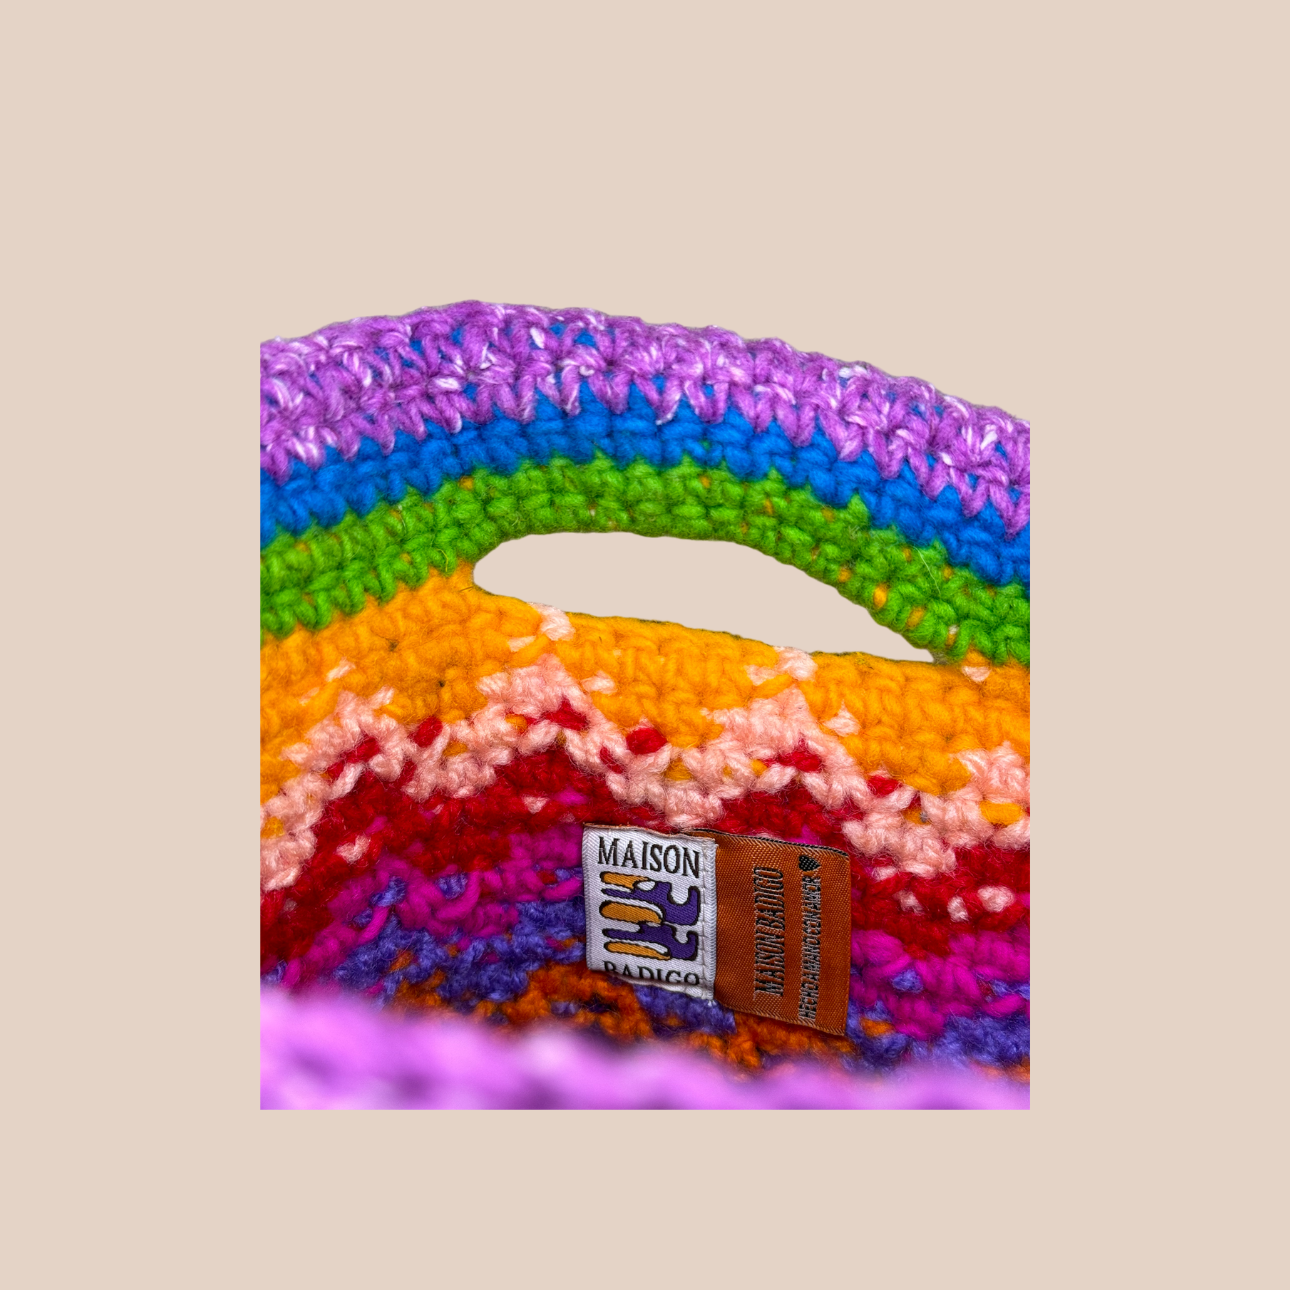 Image du sac motif feu de Maison Badigo, sac en laine crocheté multicolore unique et tendance